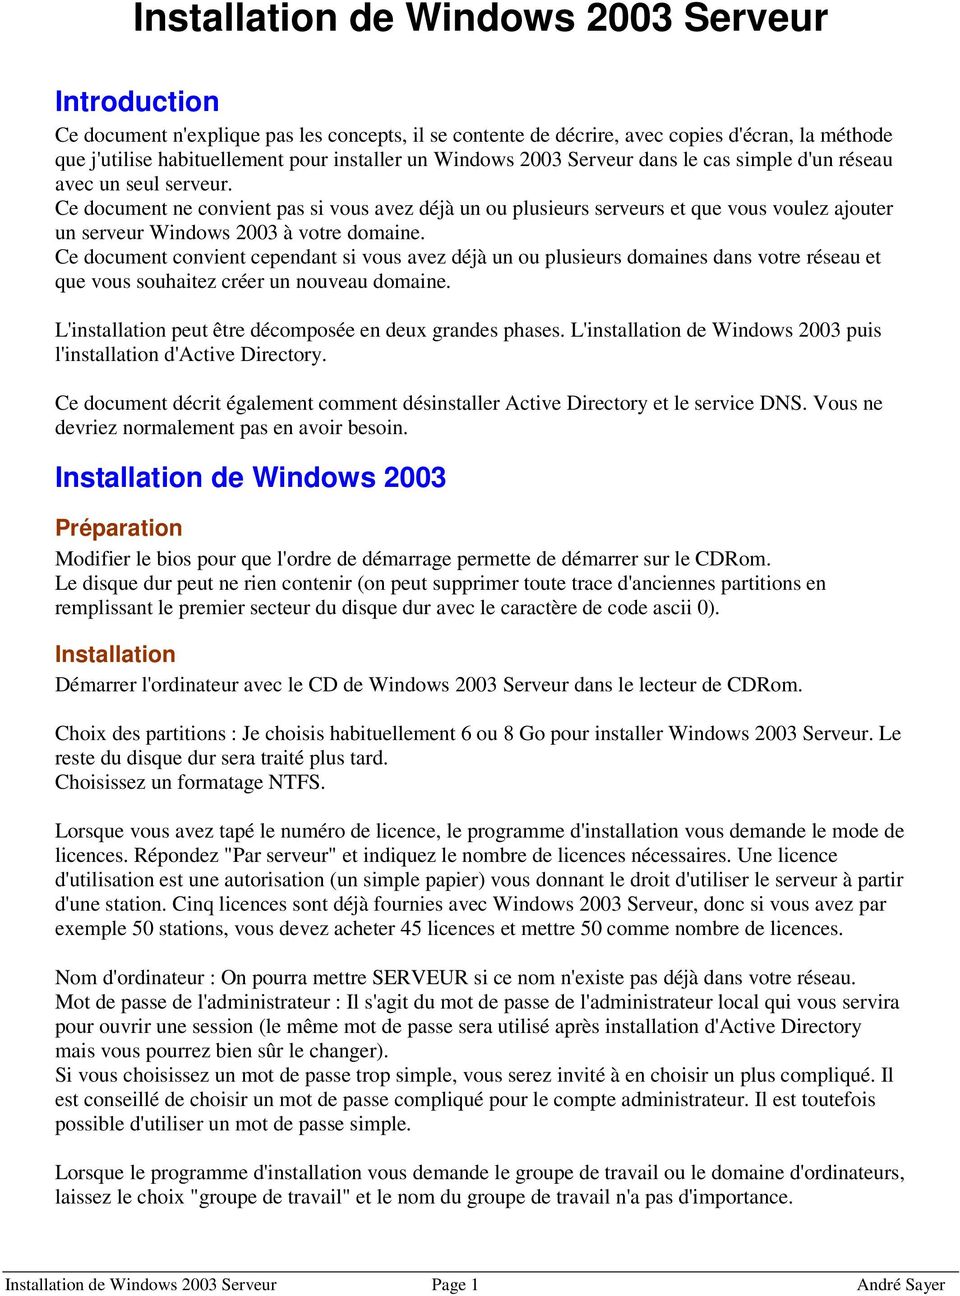 Ce document ne convient pas si vous avez déjà un ou plusieurs serveurs et que vous voulez ajouter un serveur Windows 2003 à votre domaine.